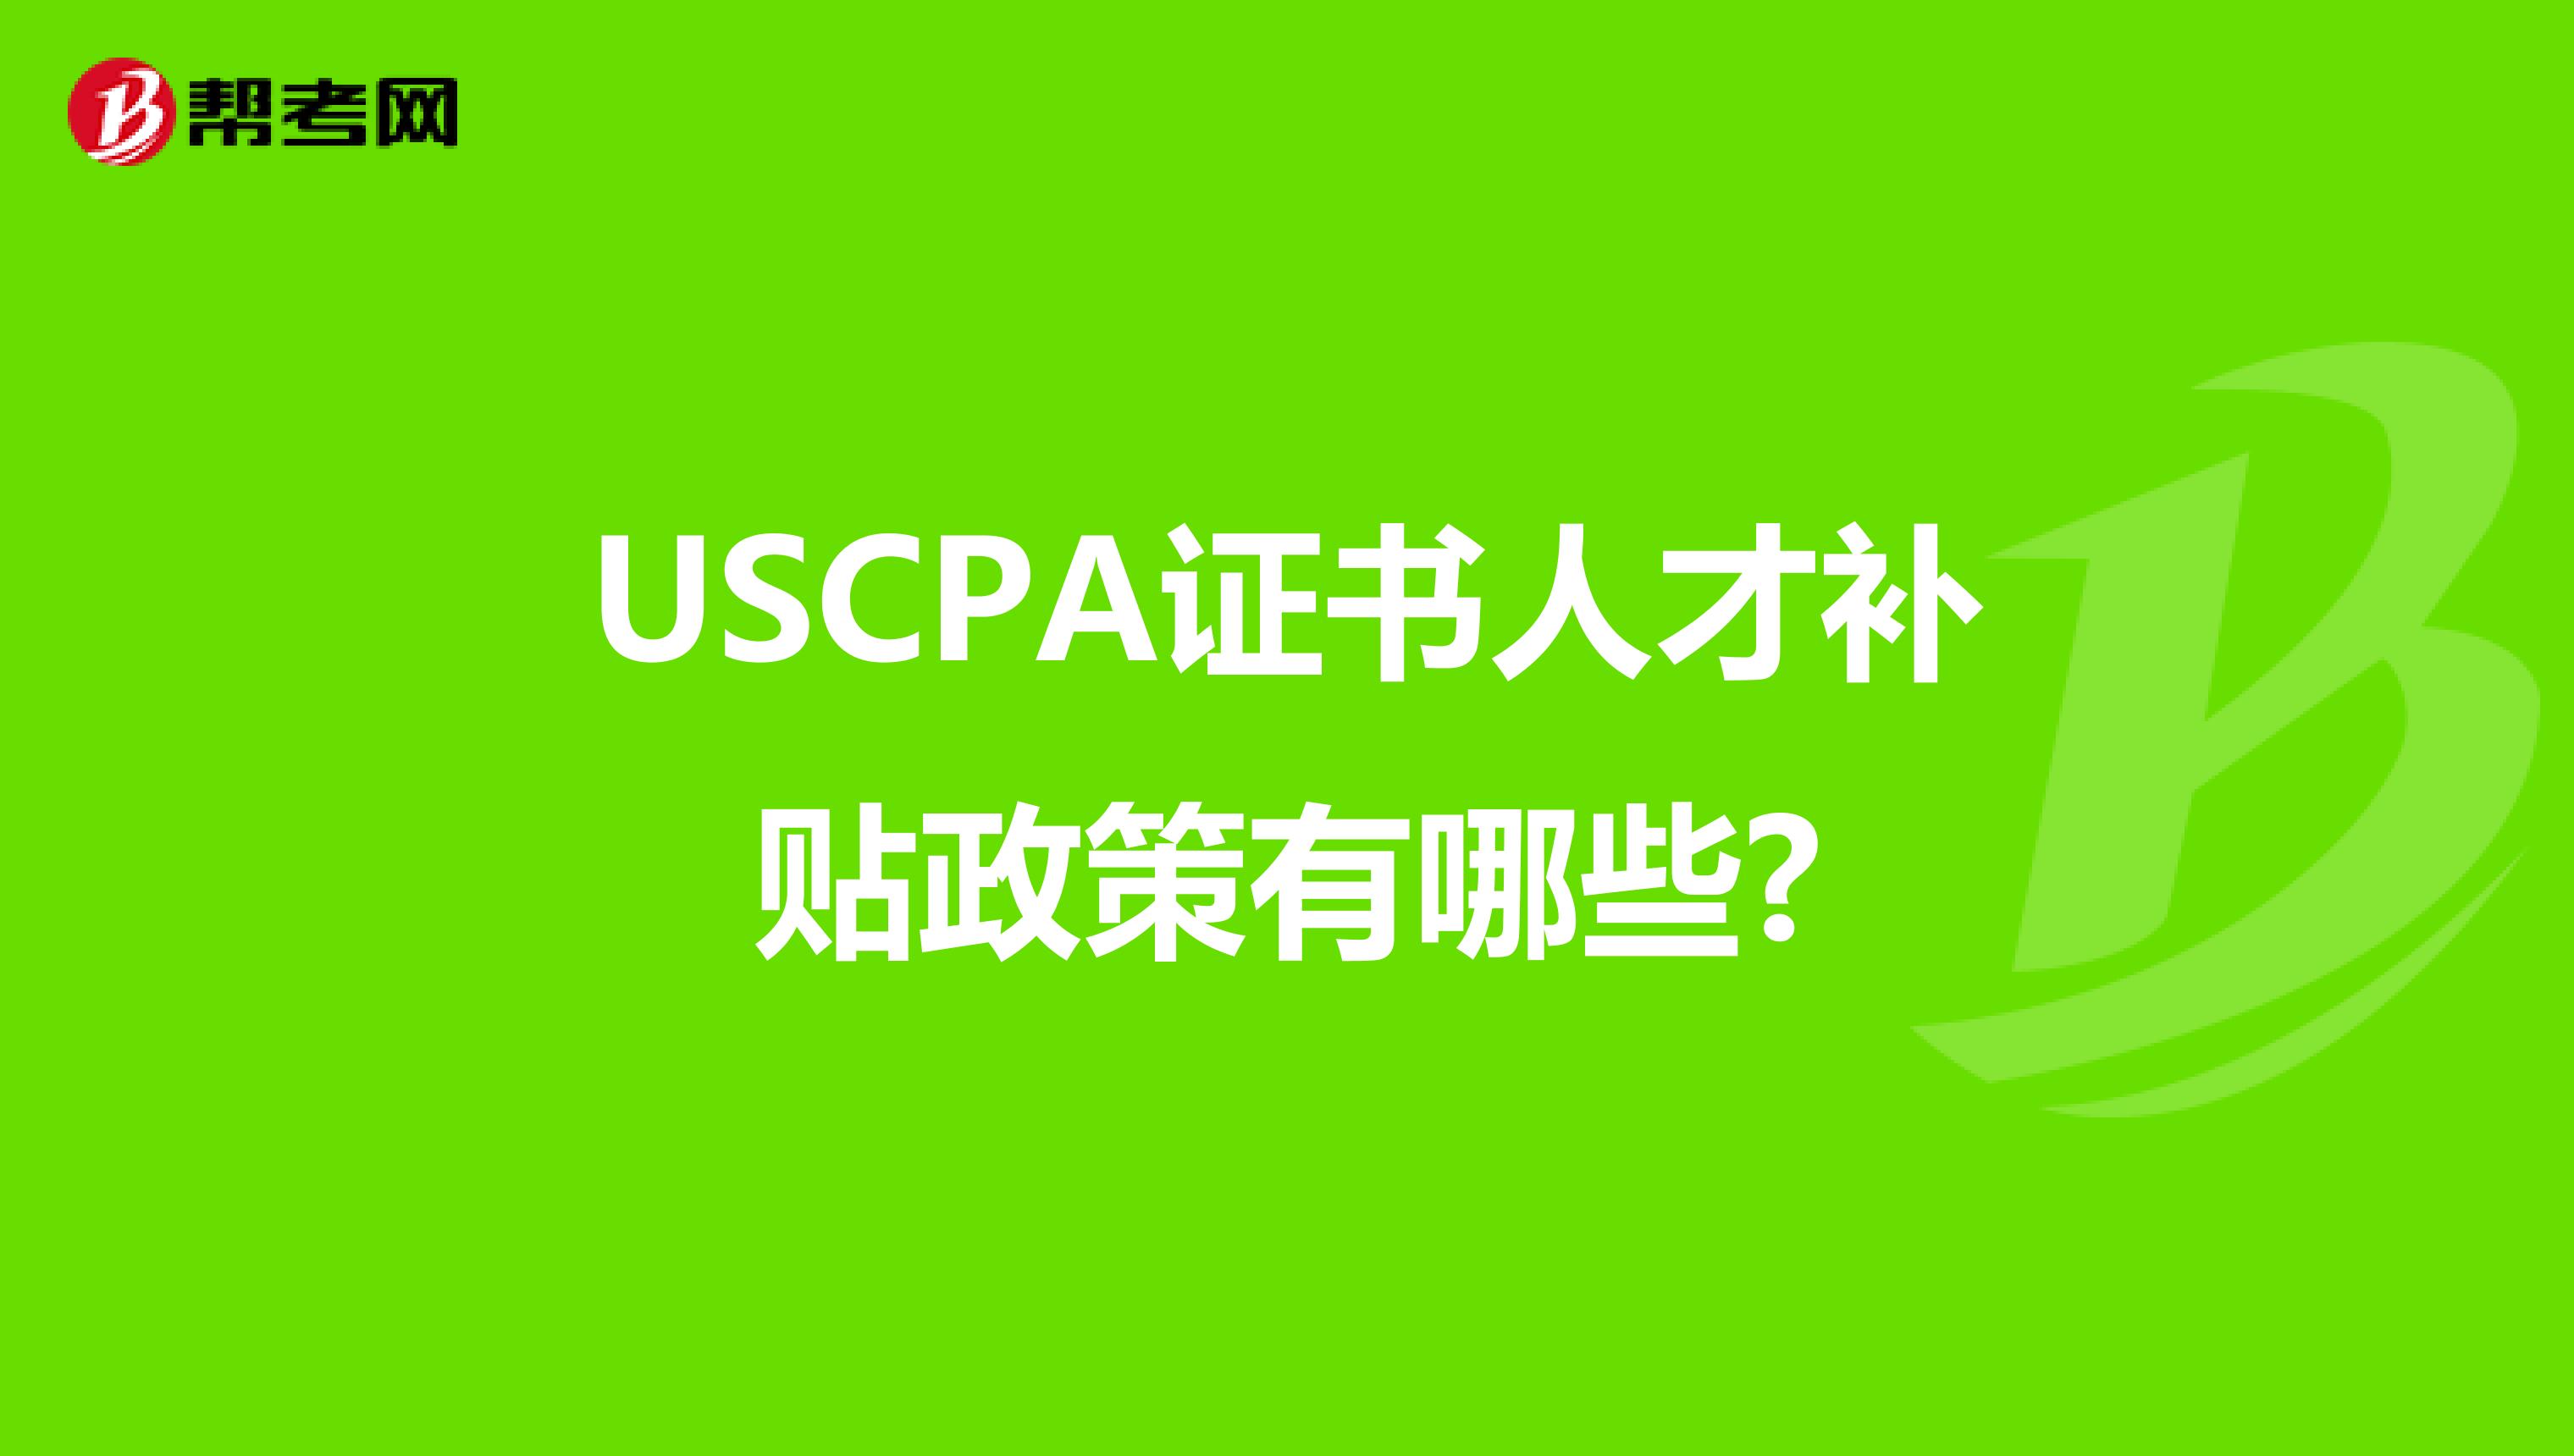 USCPA证书人才补贴政策有哪些?